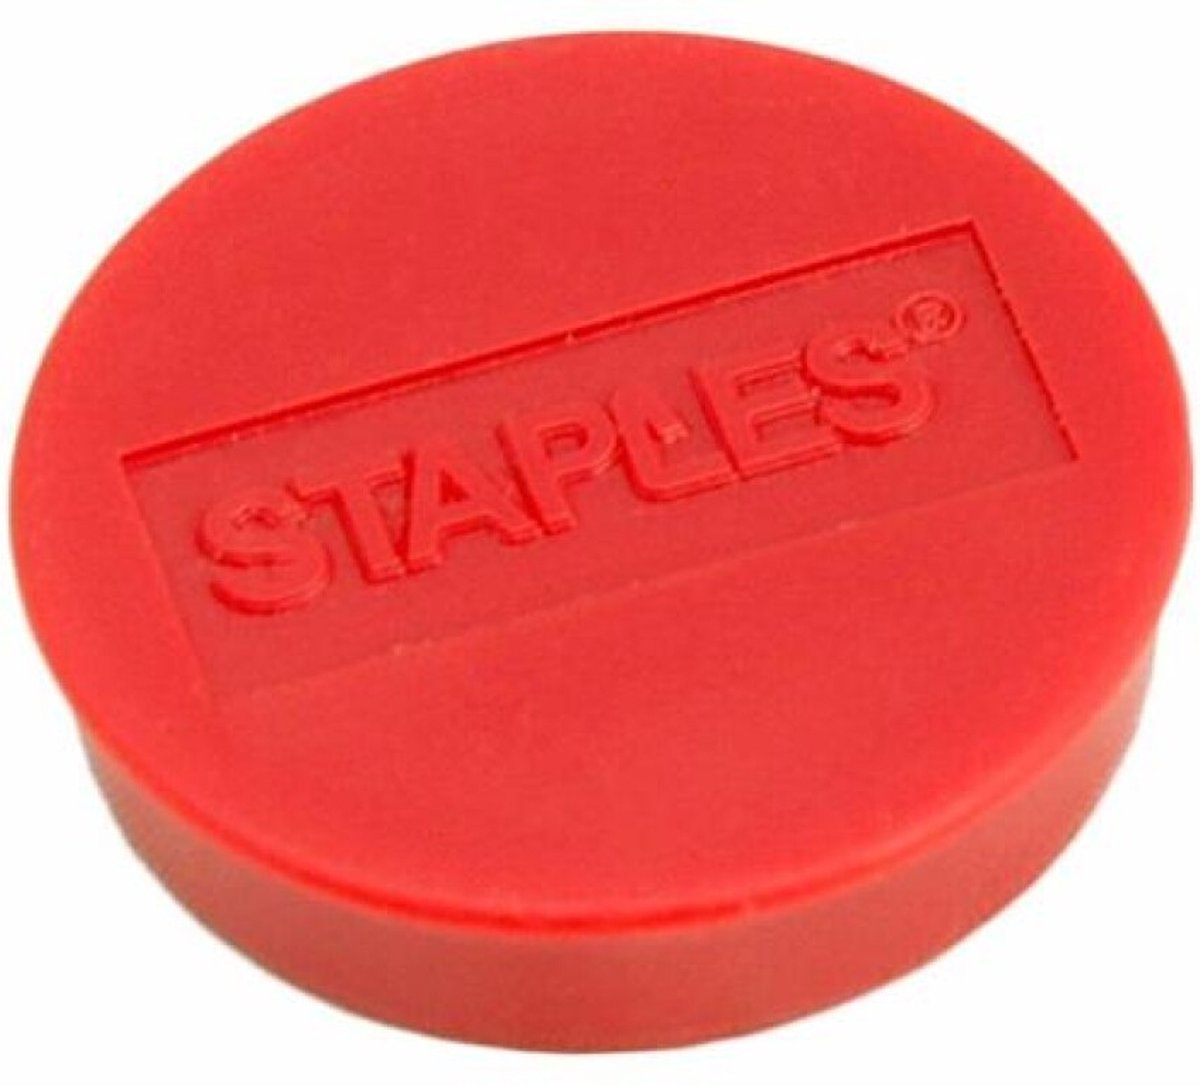 Staples Verpakking met 10 ronde, rode magneten van 30 mm met een magnetische kracht 850 gram/m² (doos 10 stuks)